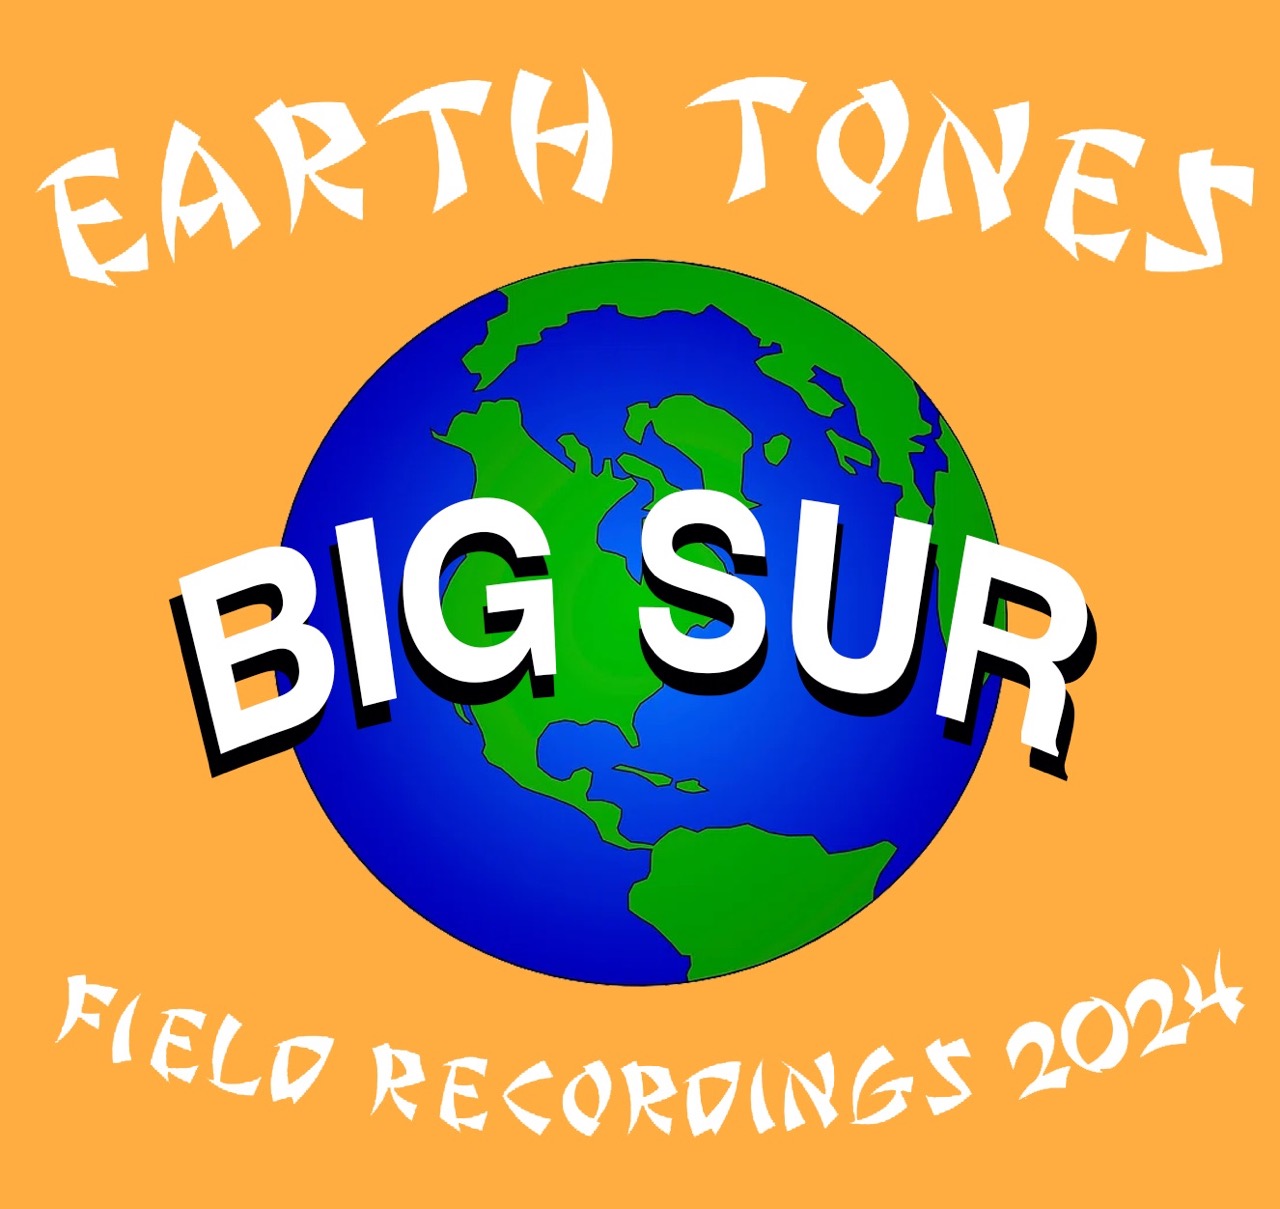 EARTH TONES “Big Sur” |  by Sam Hayes